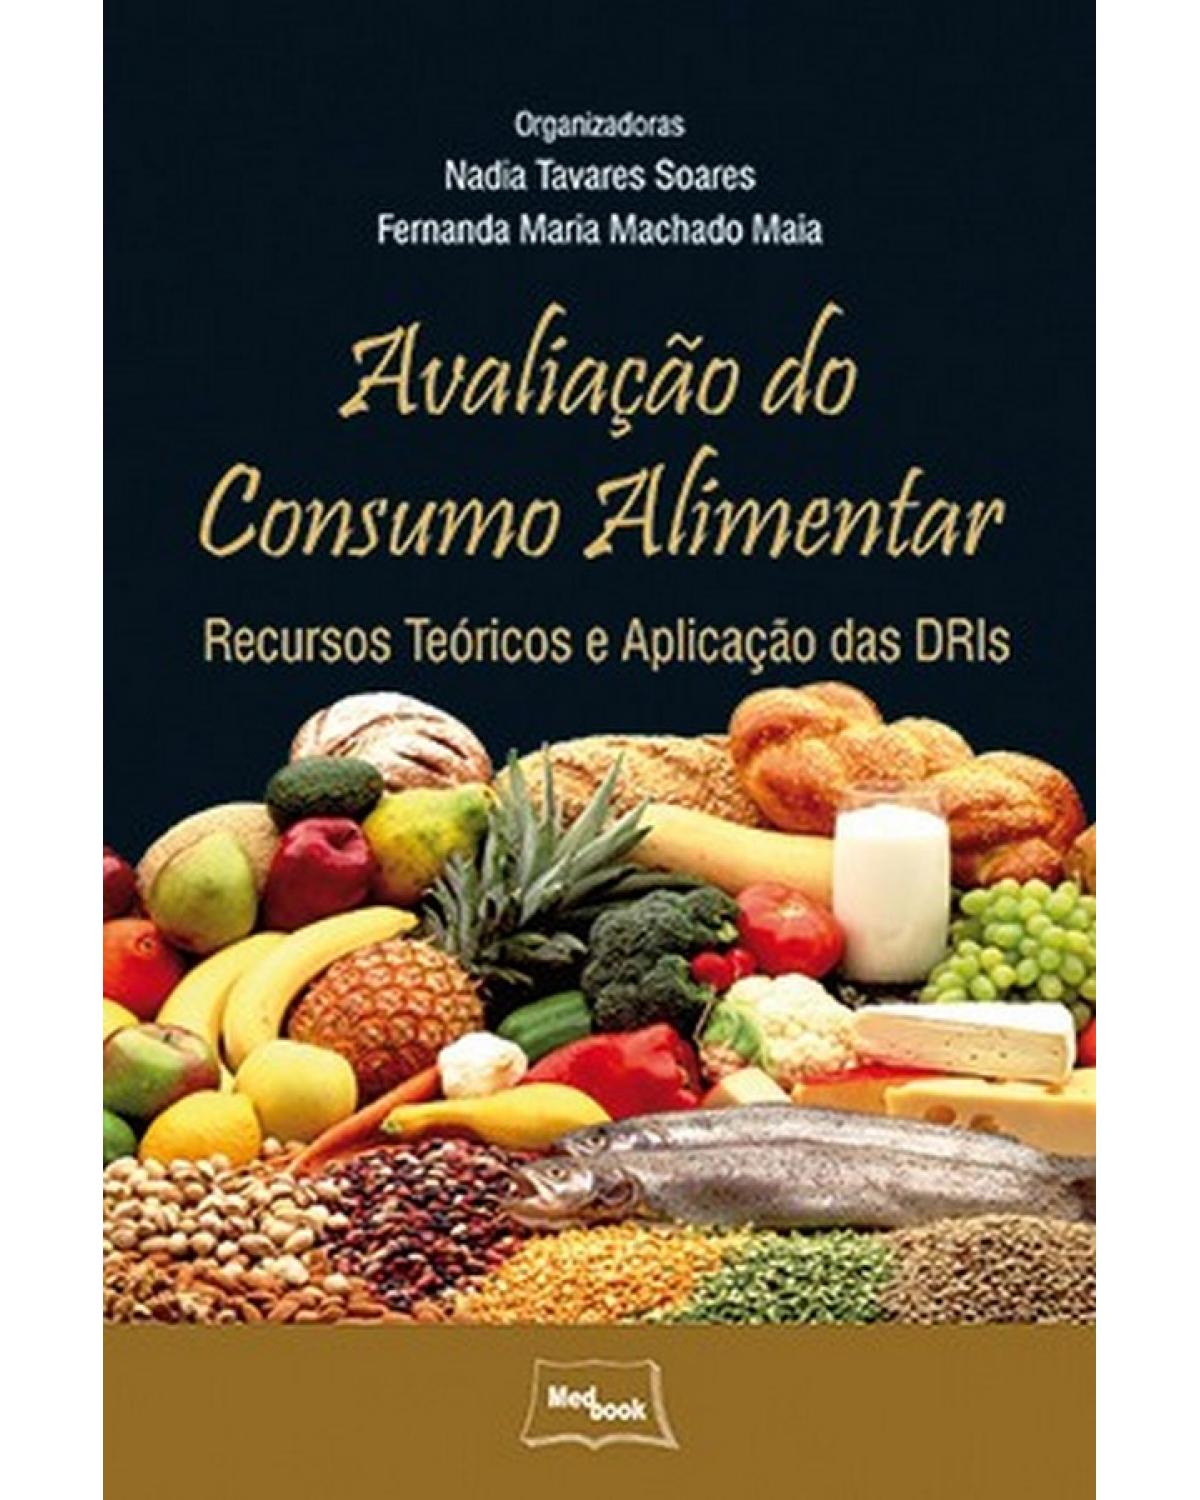 Avaliação do consumo alimentar - recursos teóricos e aplicação das DRIs - 1ª Edição | 2013